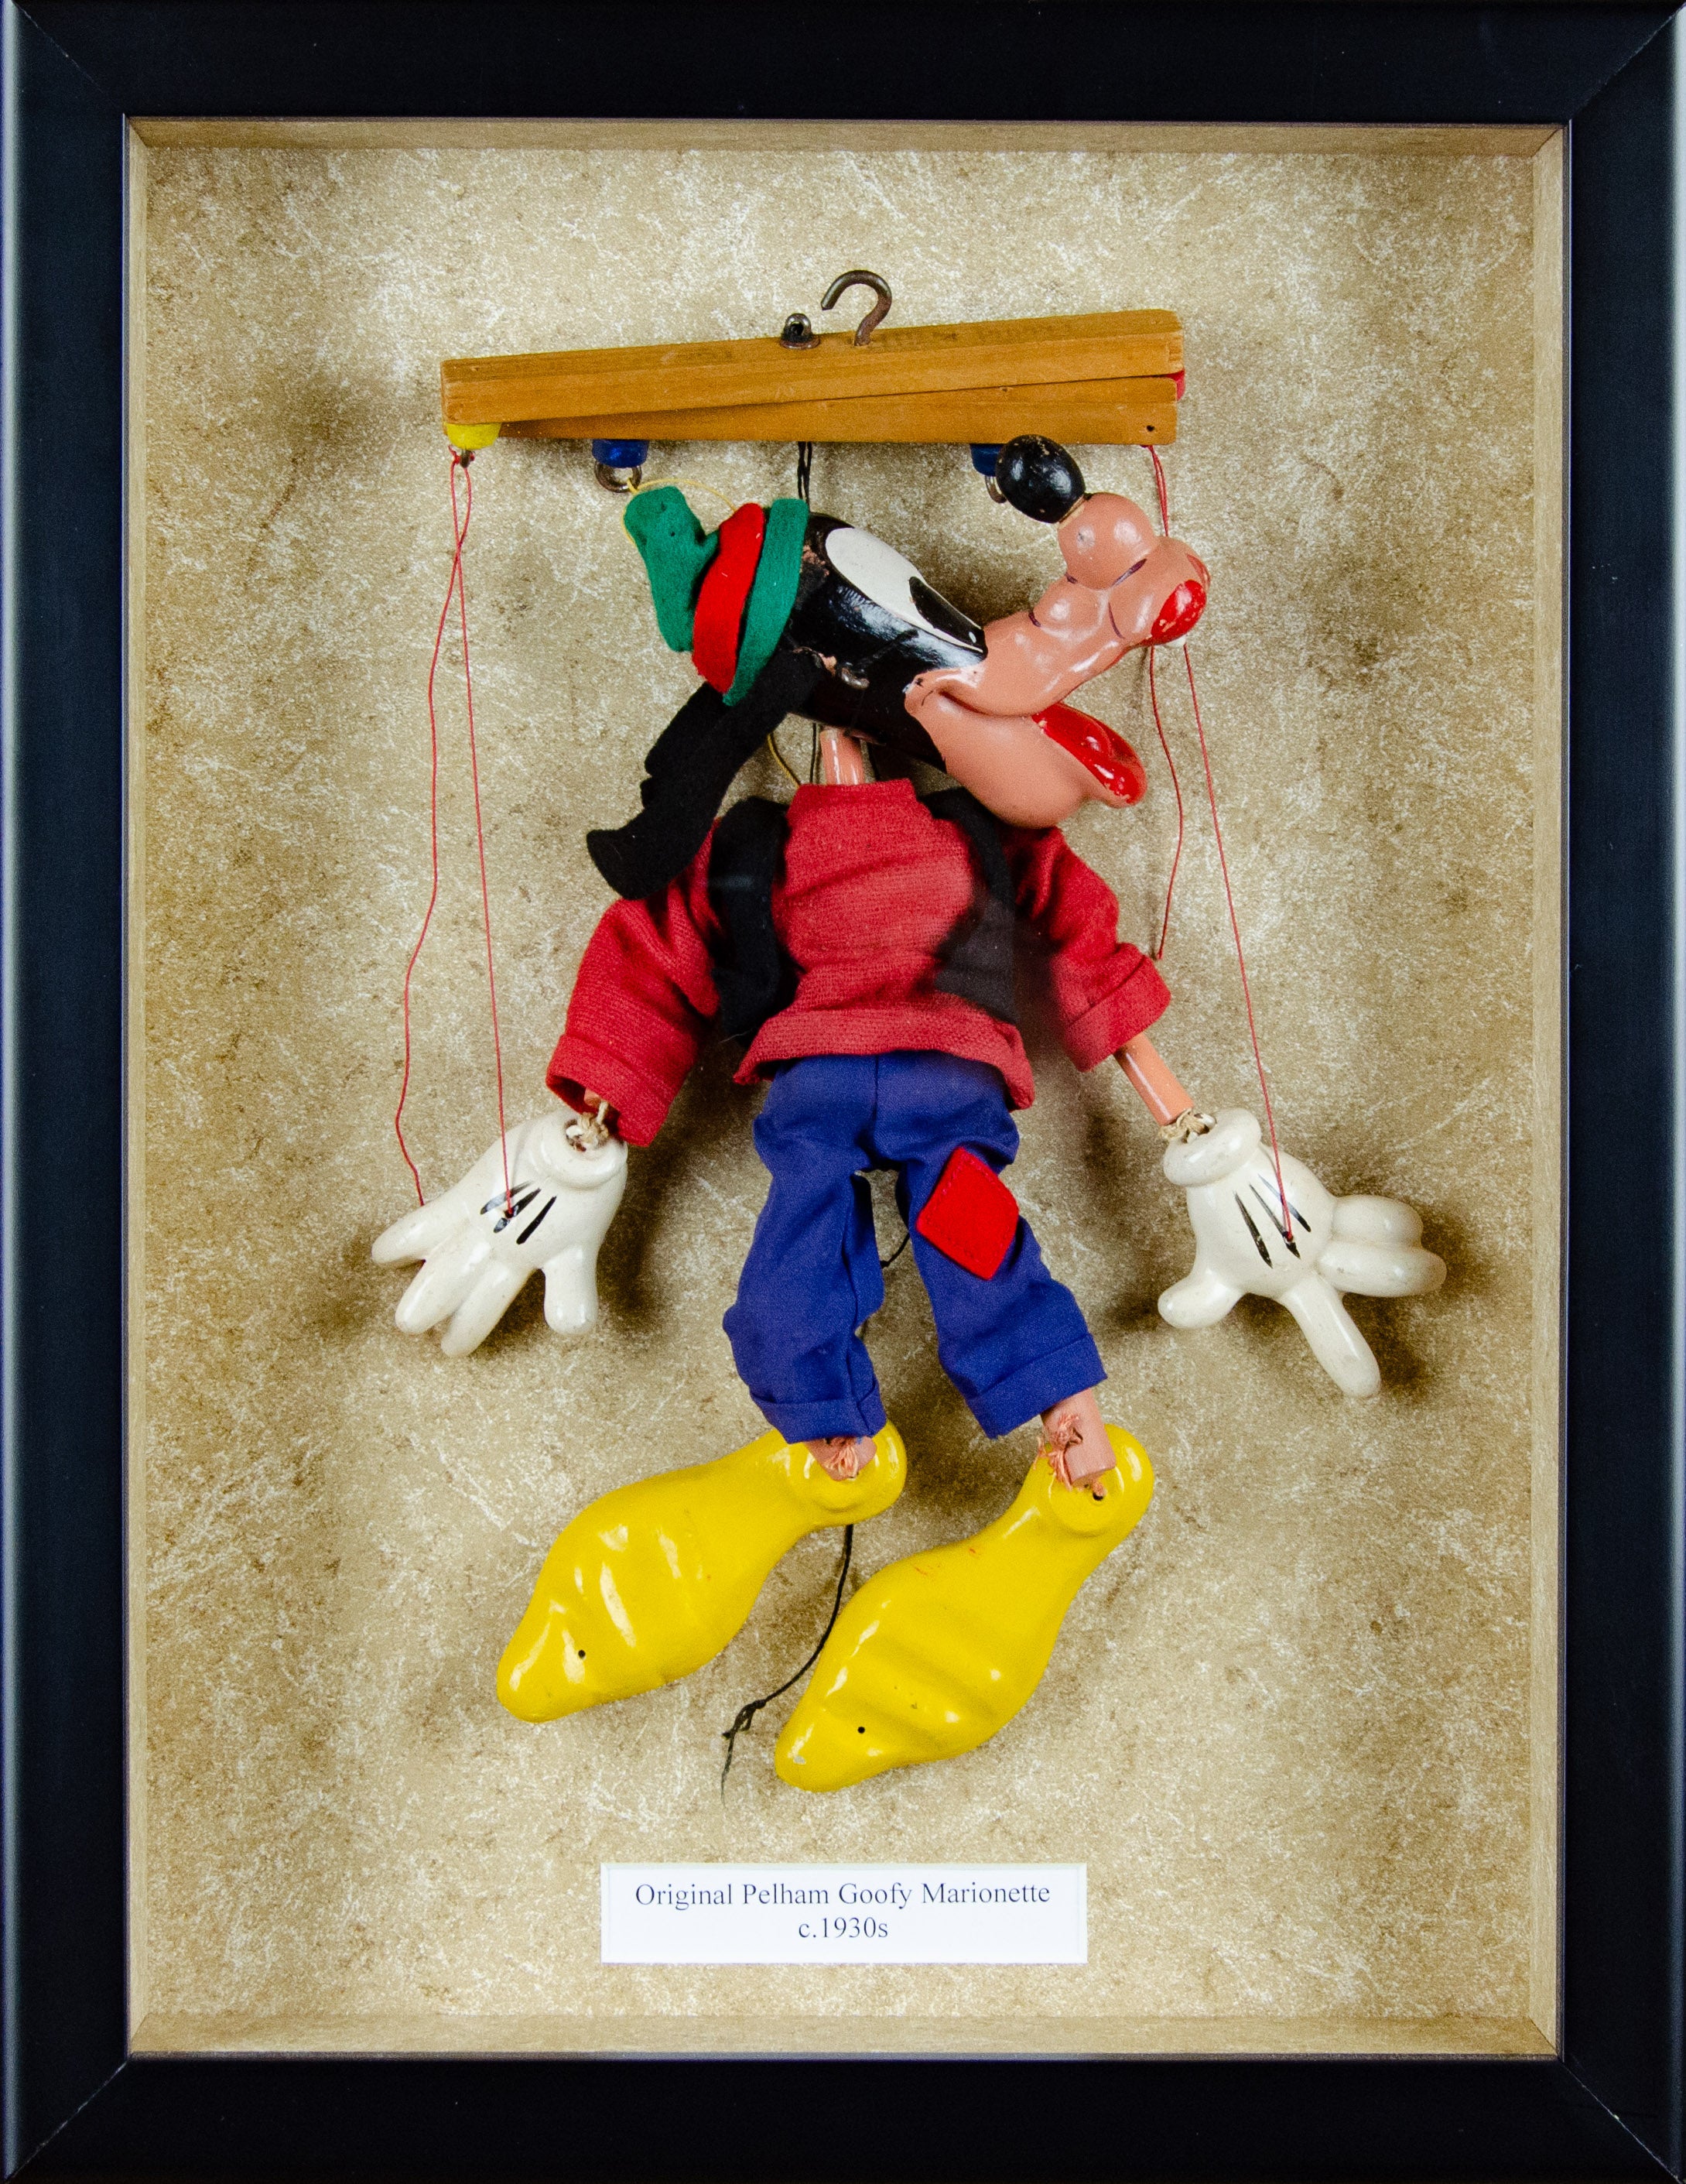 Original Pelham Goofy Marionette